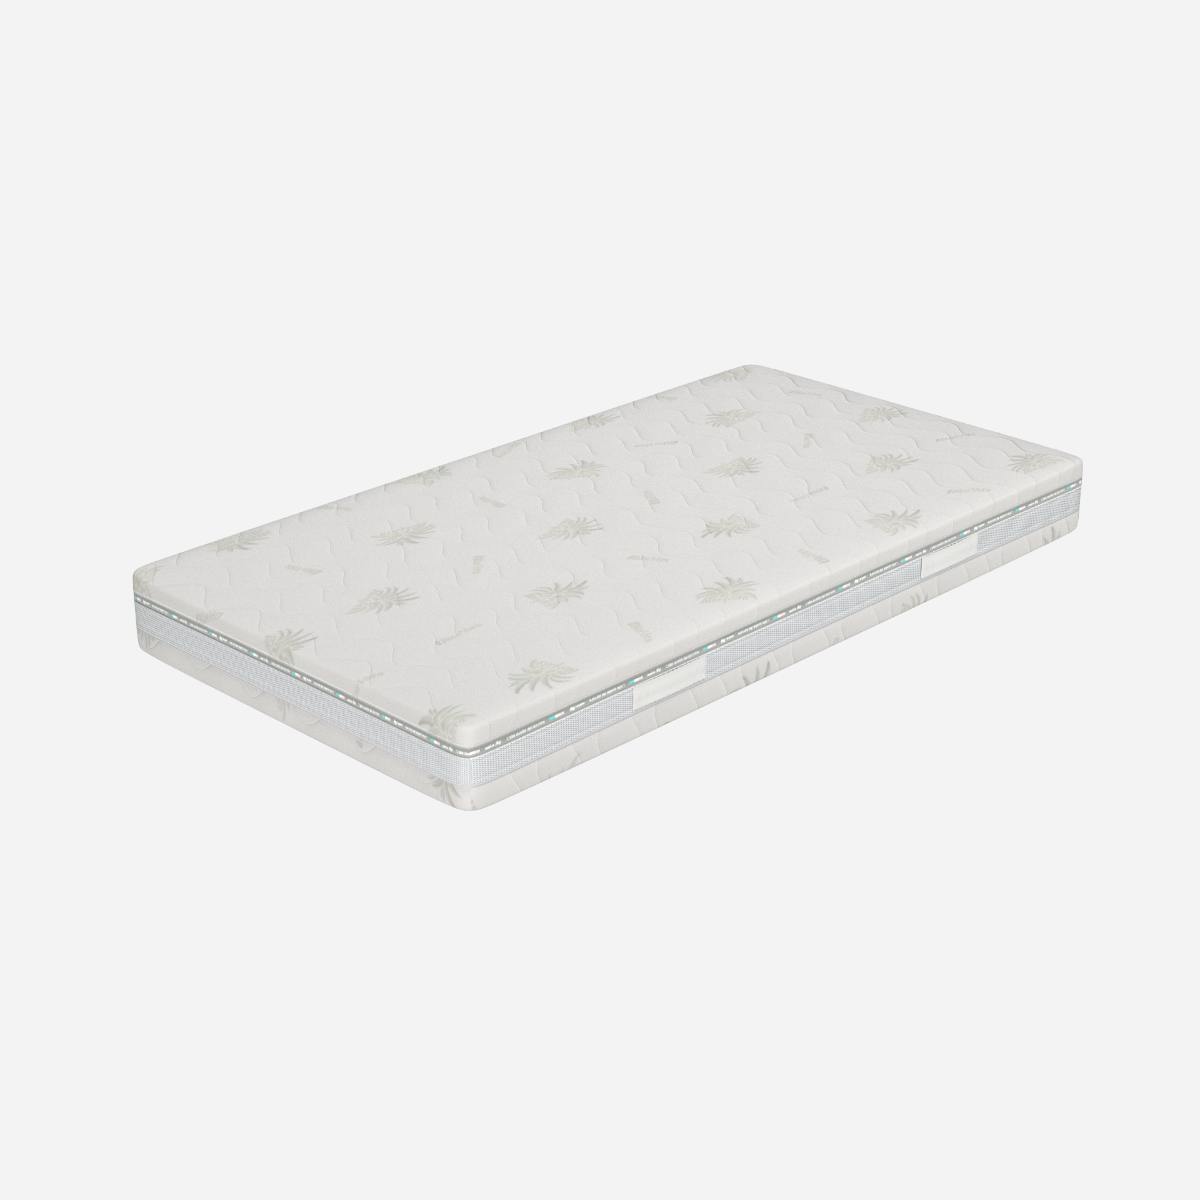 Topper Singolo Memory Foam 90x200 - alto 5 cm, a portanza